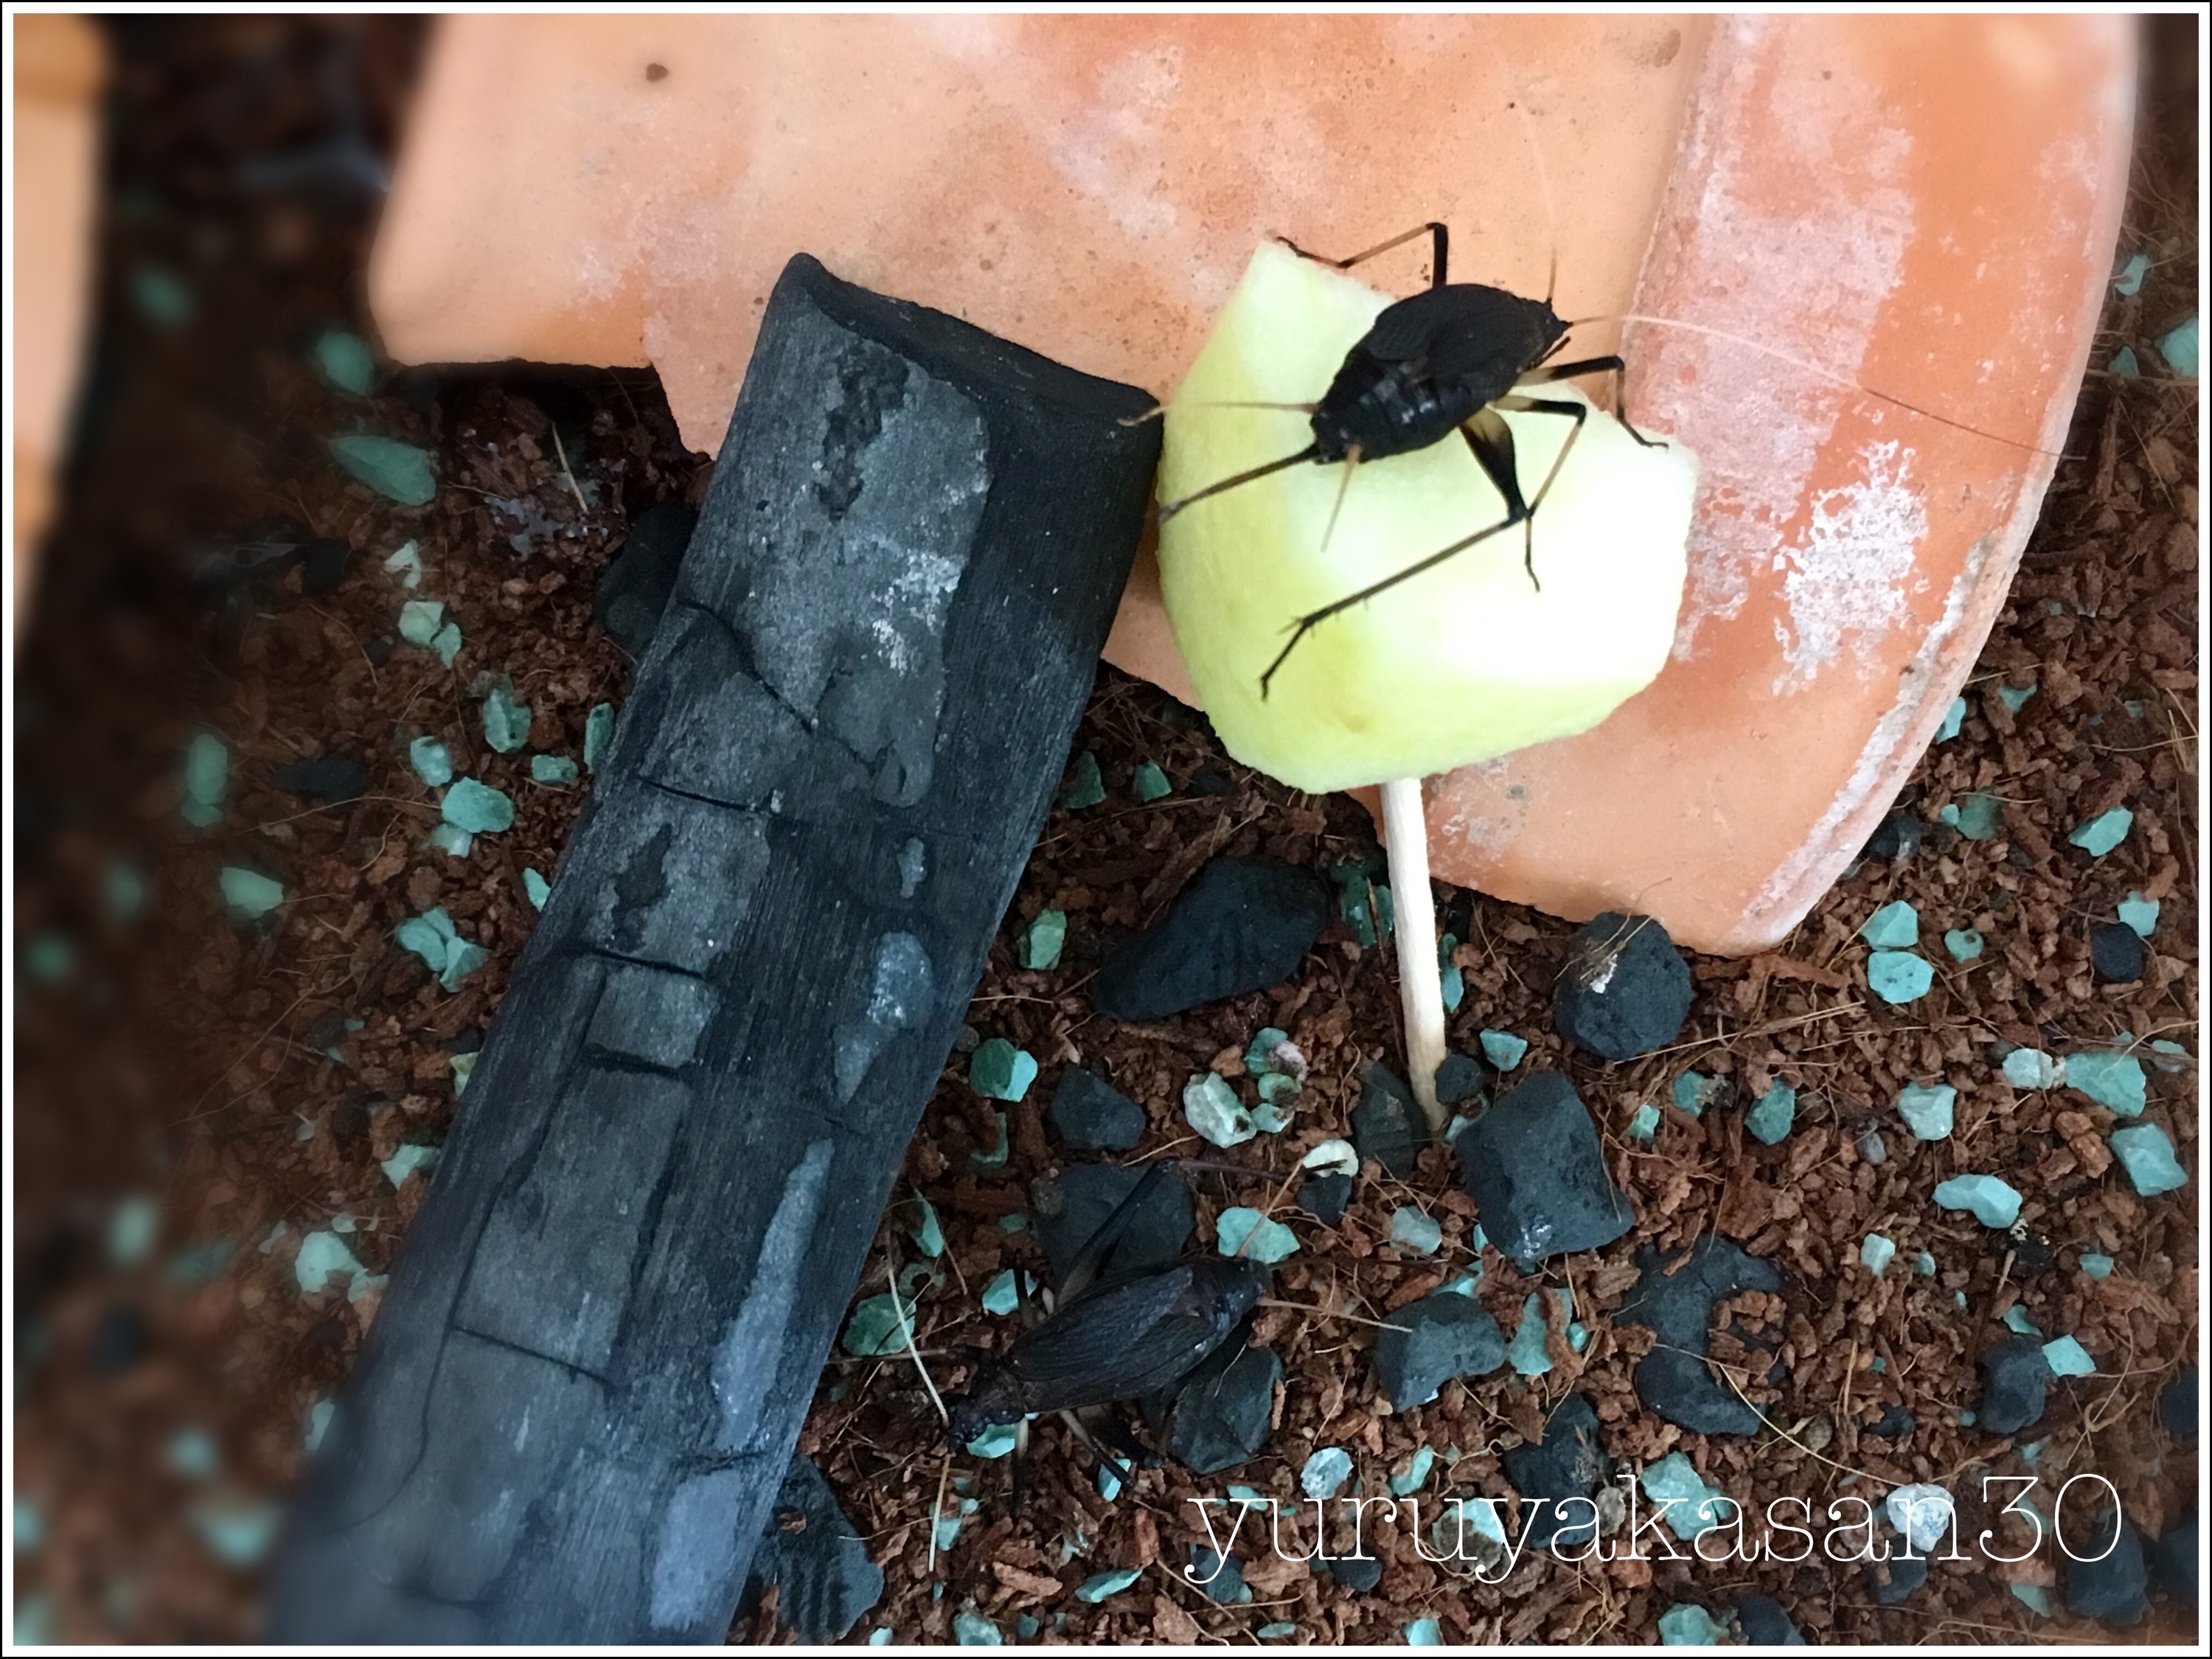 飼育下でのスズムシ の驚異的な寿命 鈴虫を飼う ゆるやかな生活を目指す女子のブログ